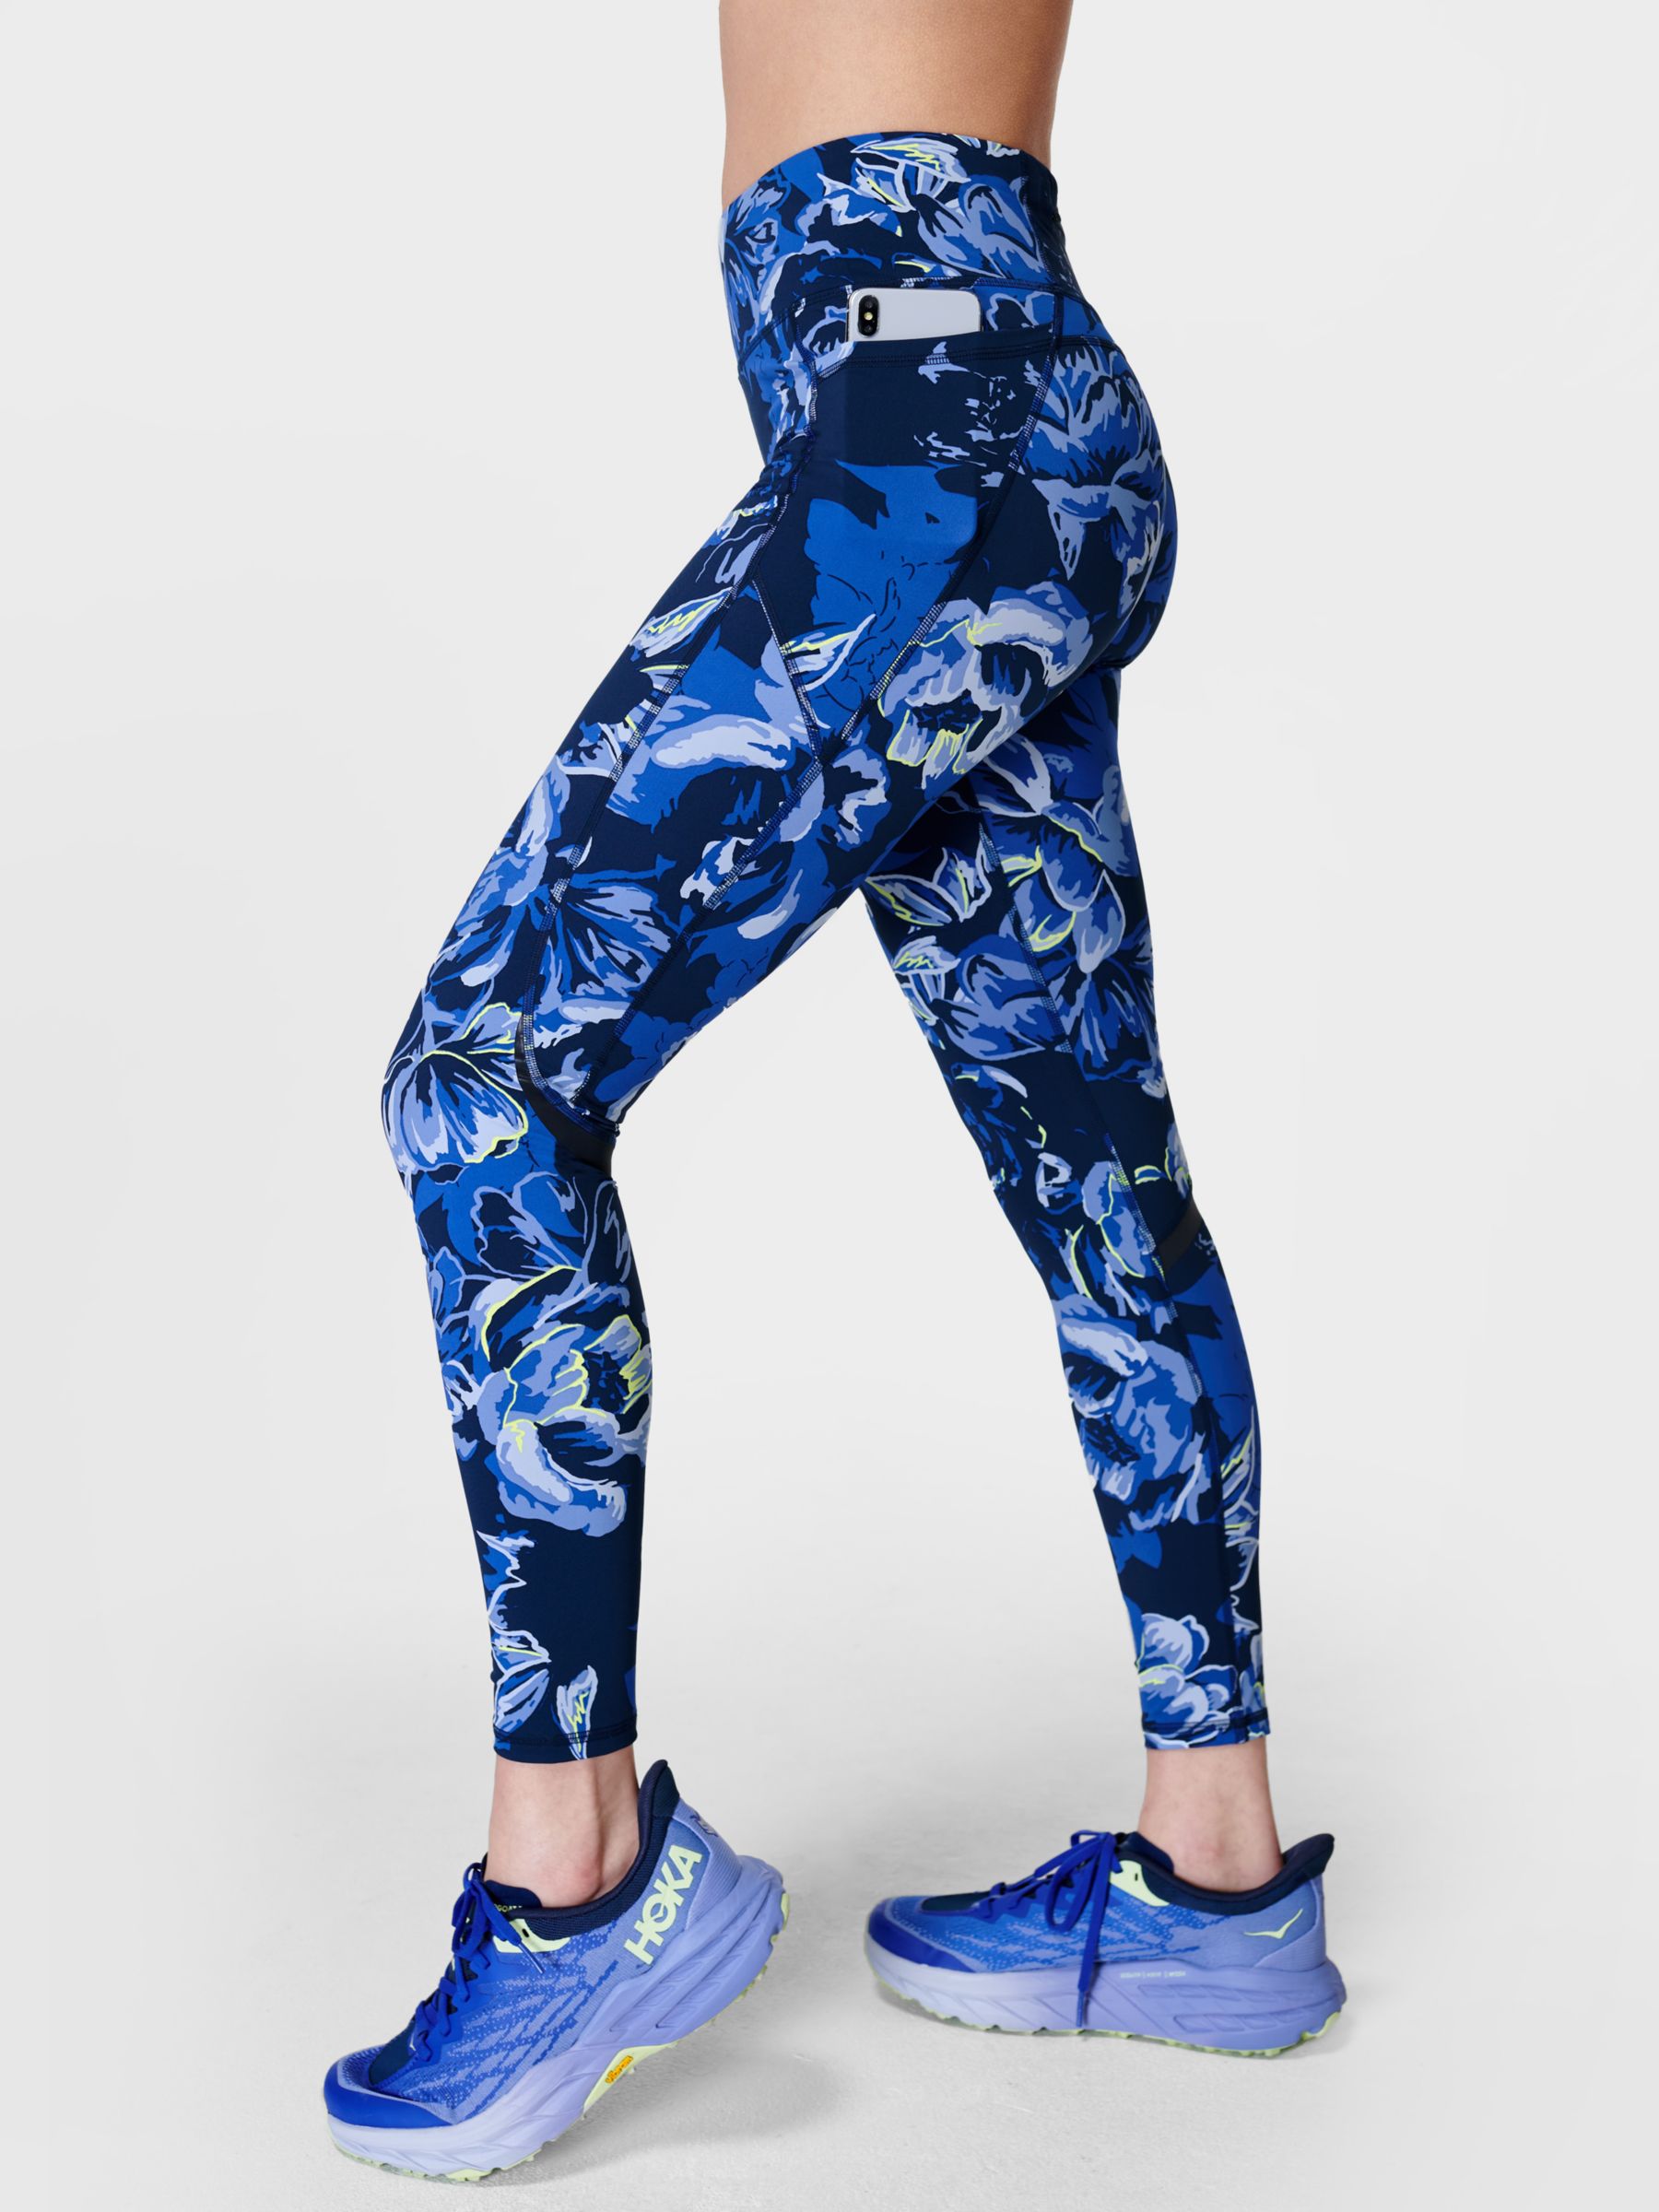 Zero Gravity High-Waisted Running Leggings - Blue Ornate Floral Print, Women's Leggings